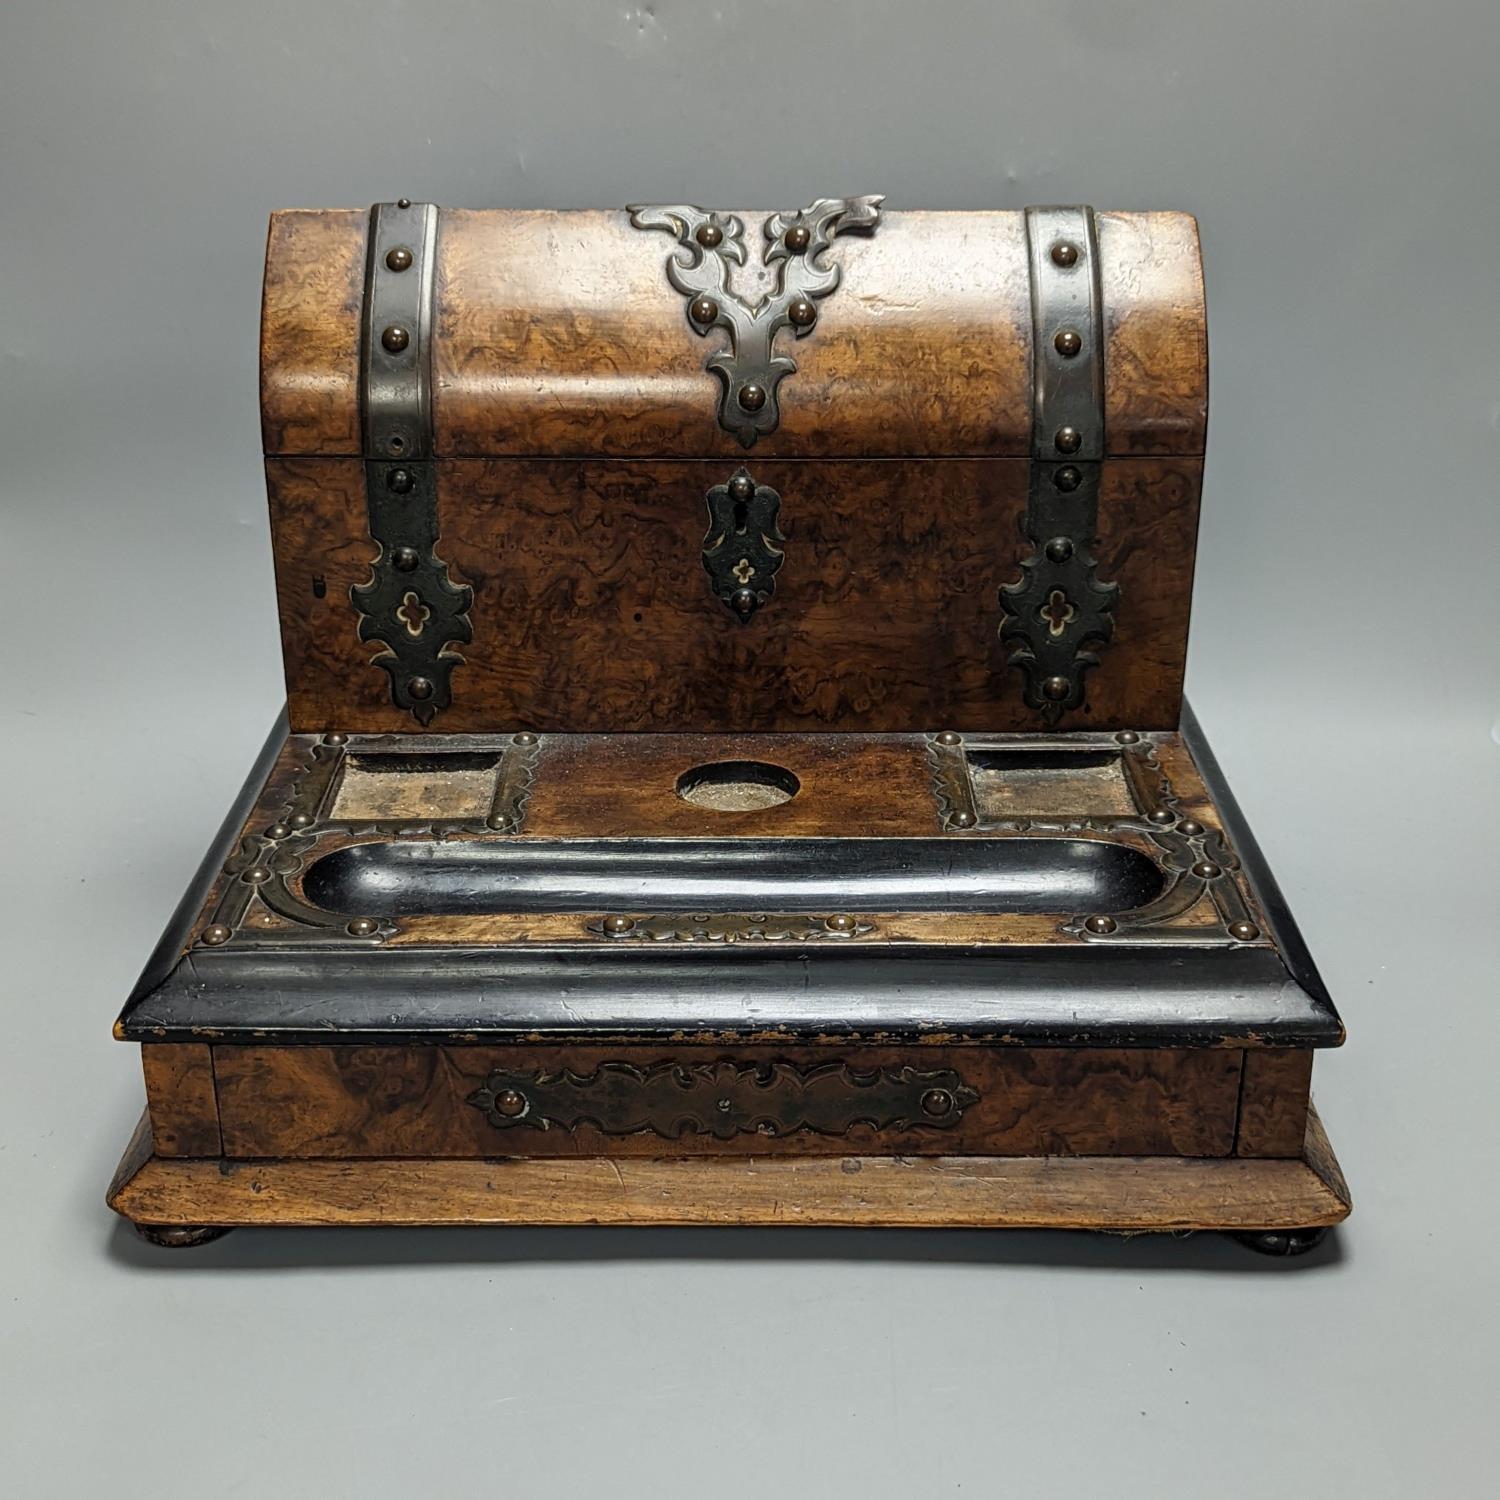 A Victorian brass bound walnut desk stand 36cm